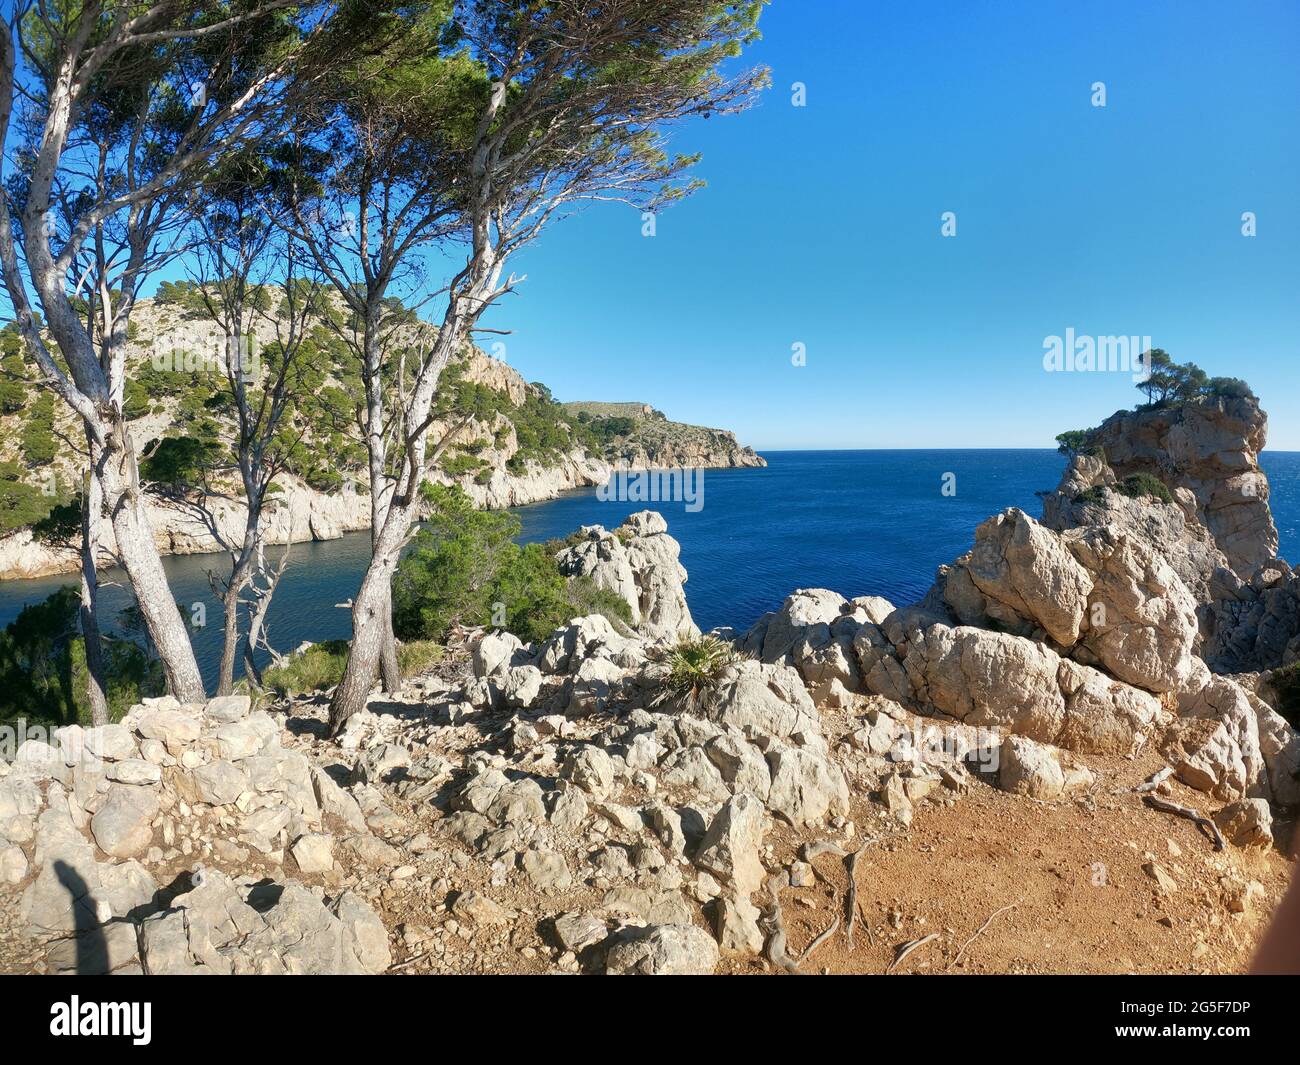 Cala Murta, Mallorca Balearic Islands Stock Photo